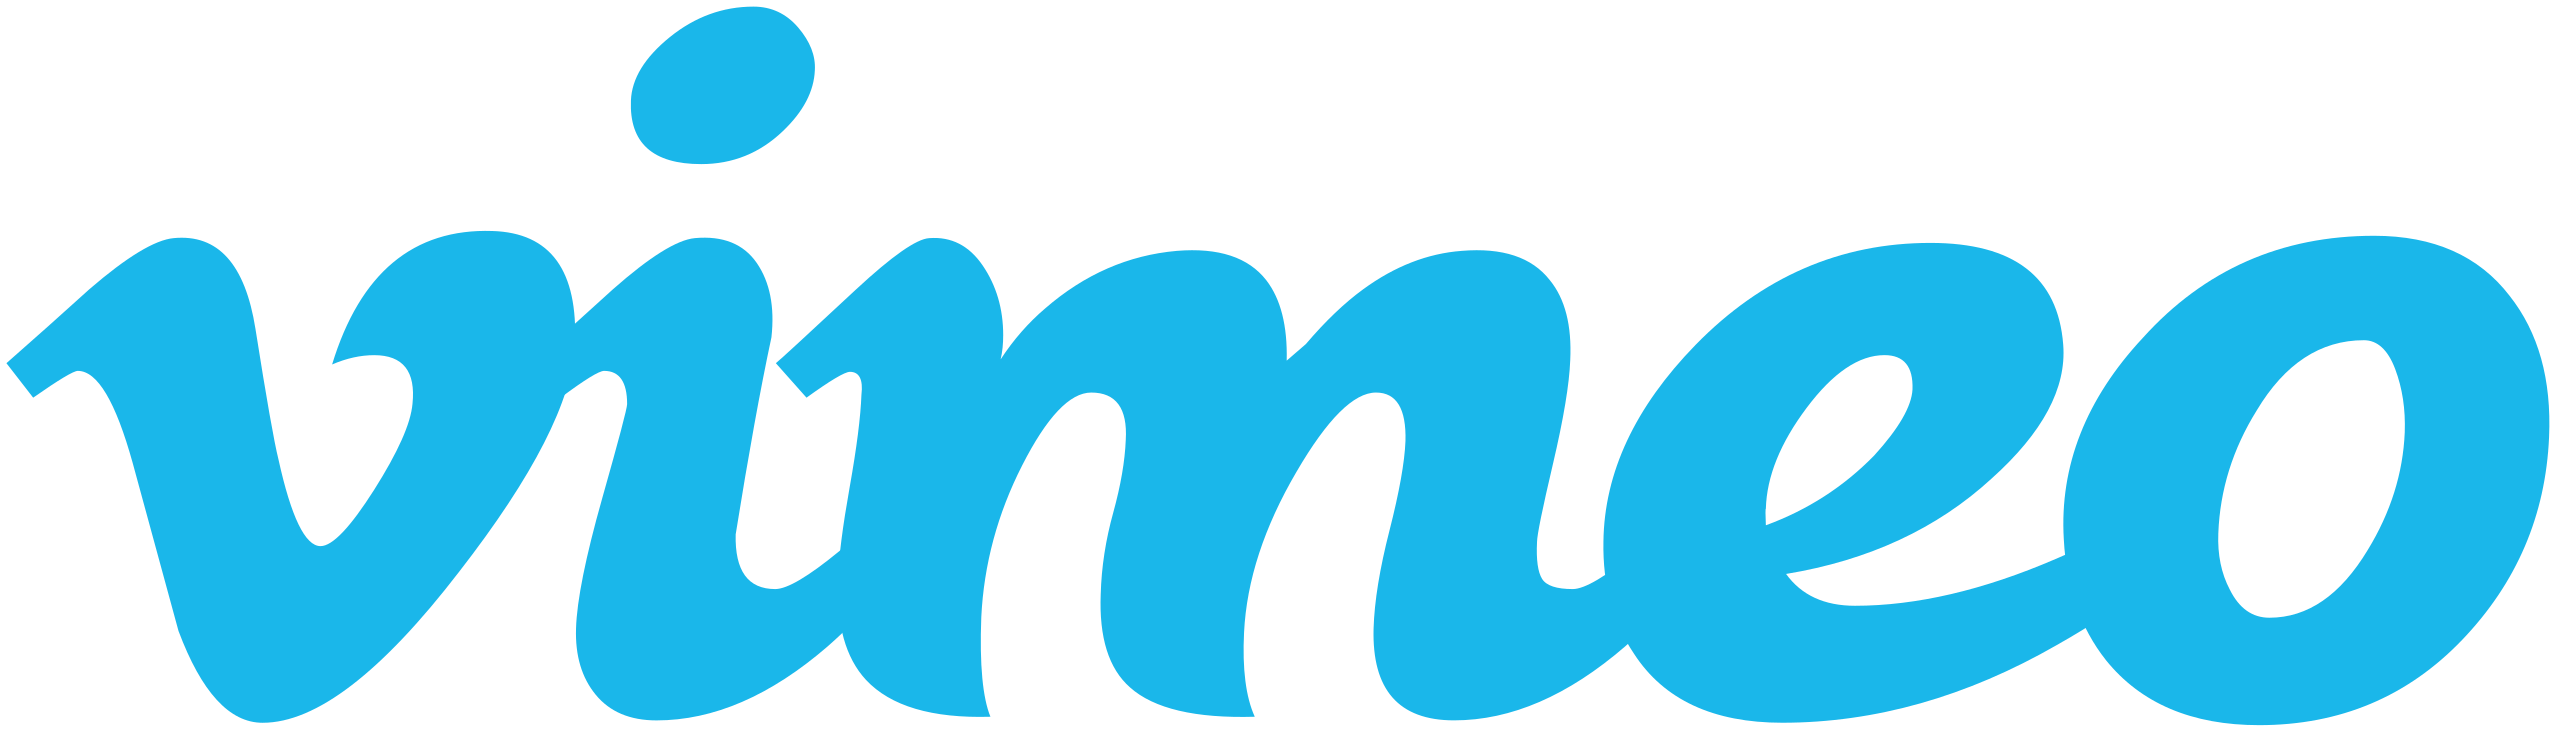 Vimeo logo.svg